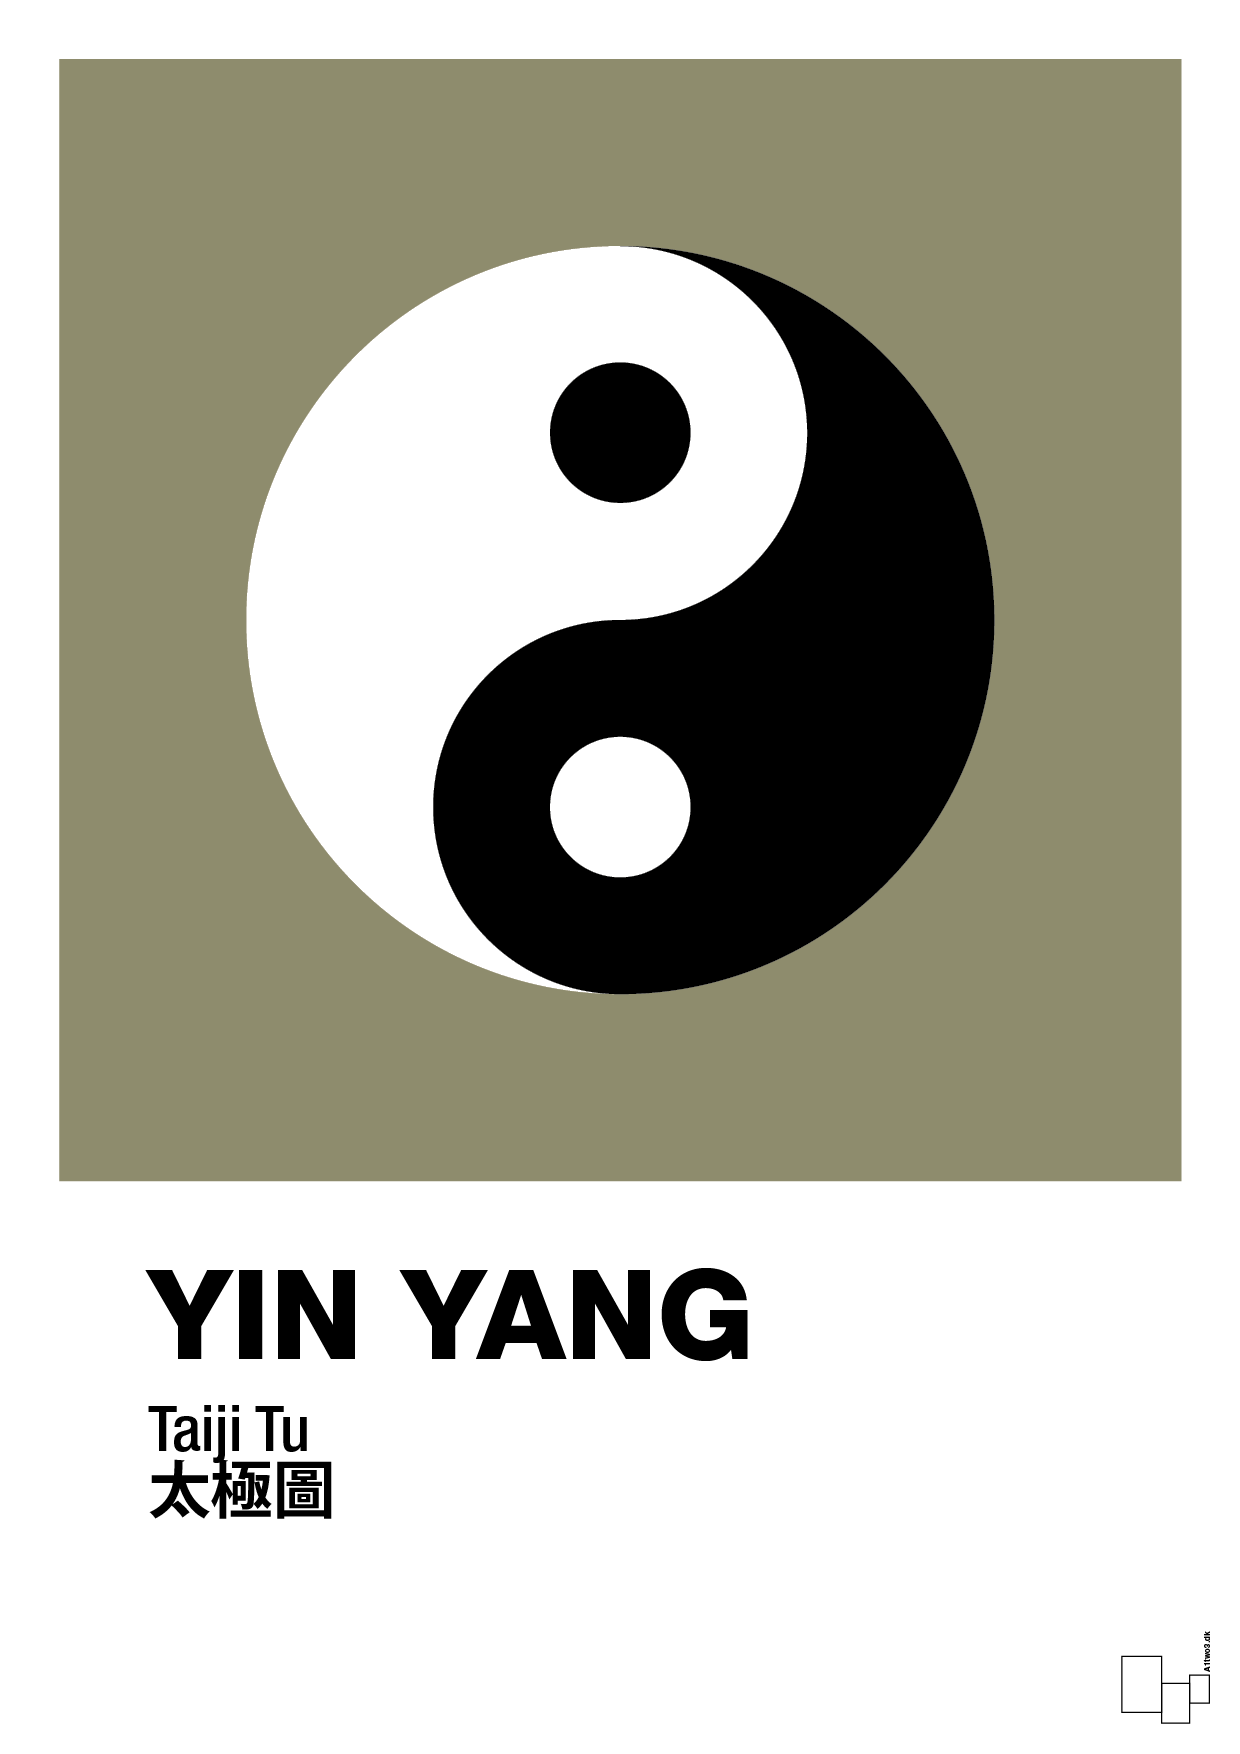 yin yang - Plakat med Videnskab i Misty Forrest